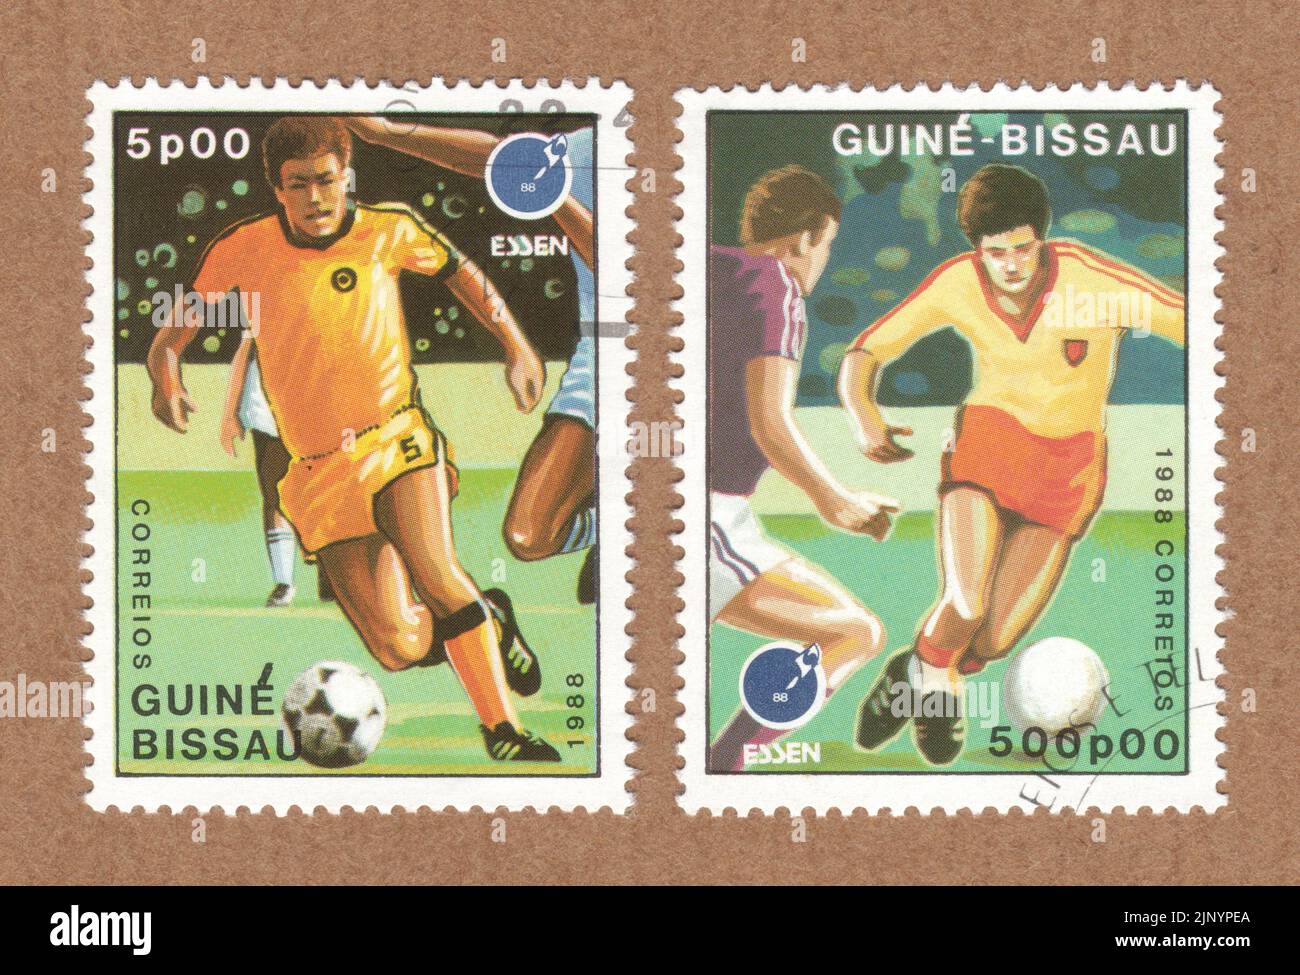 Timbres-poste Guine Bissau, du championnat d'Essen 88, Allemagne et Europe de football créé pour l'exposition internationale de timbres 1988 Banque D'Images